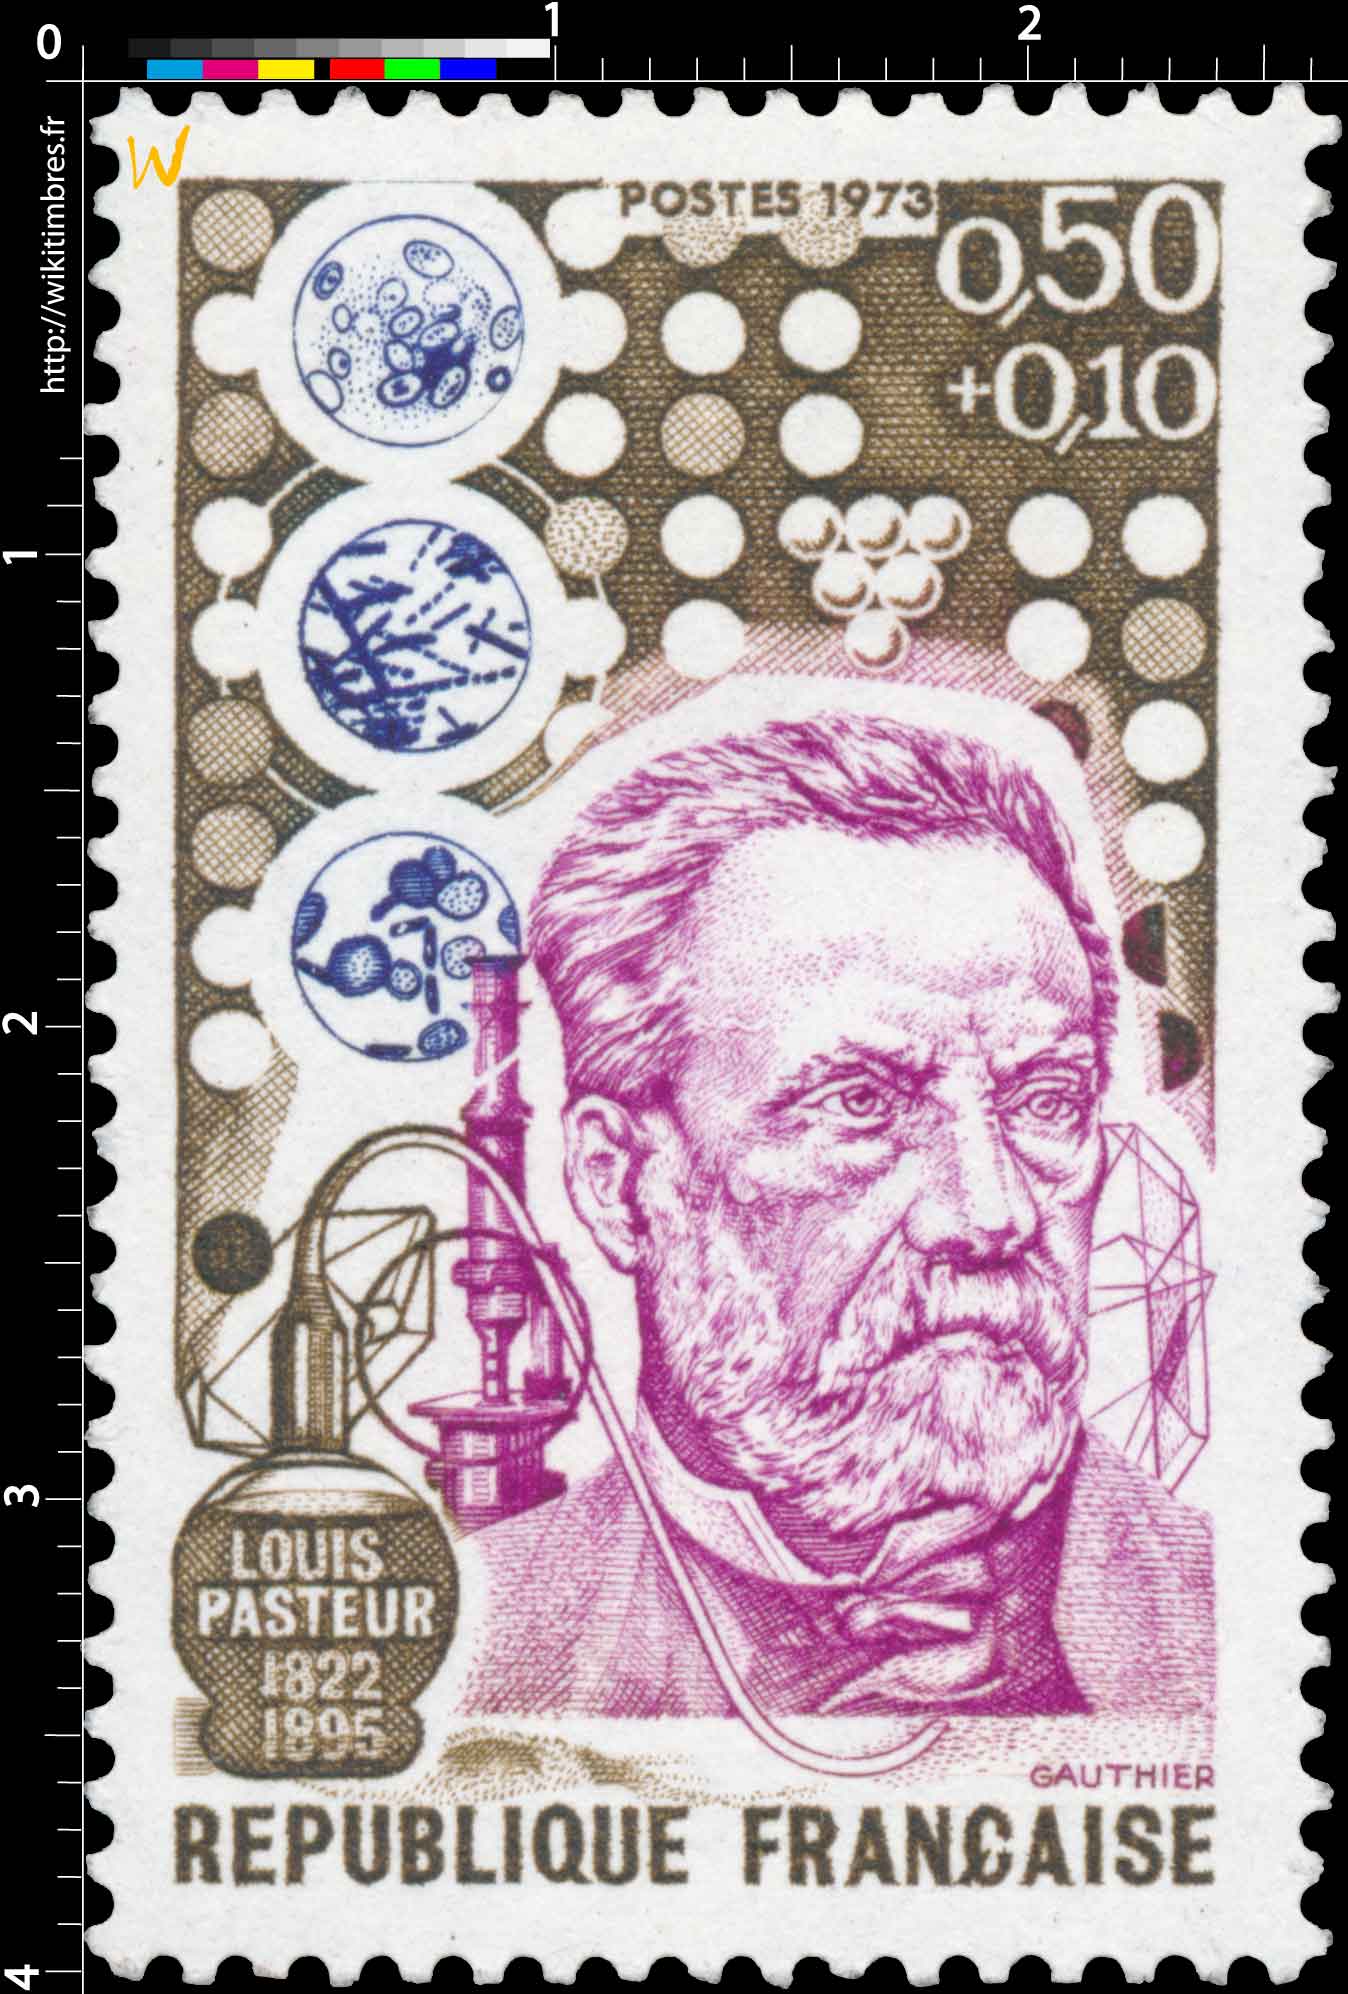 1973 LOUIS PASTEUR 1822-1895